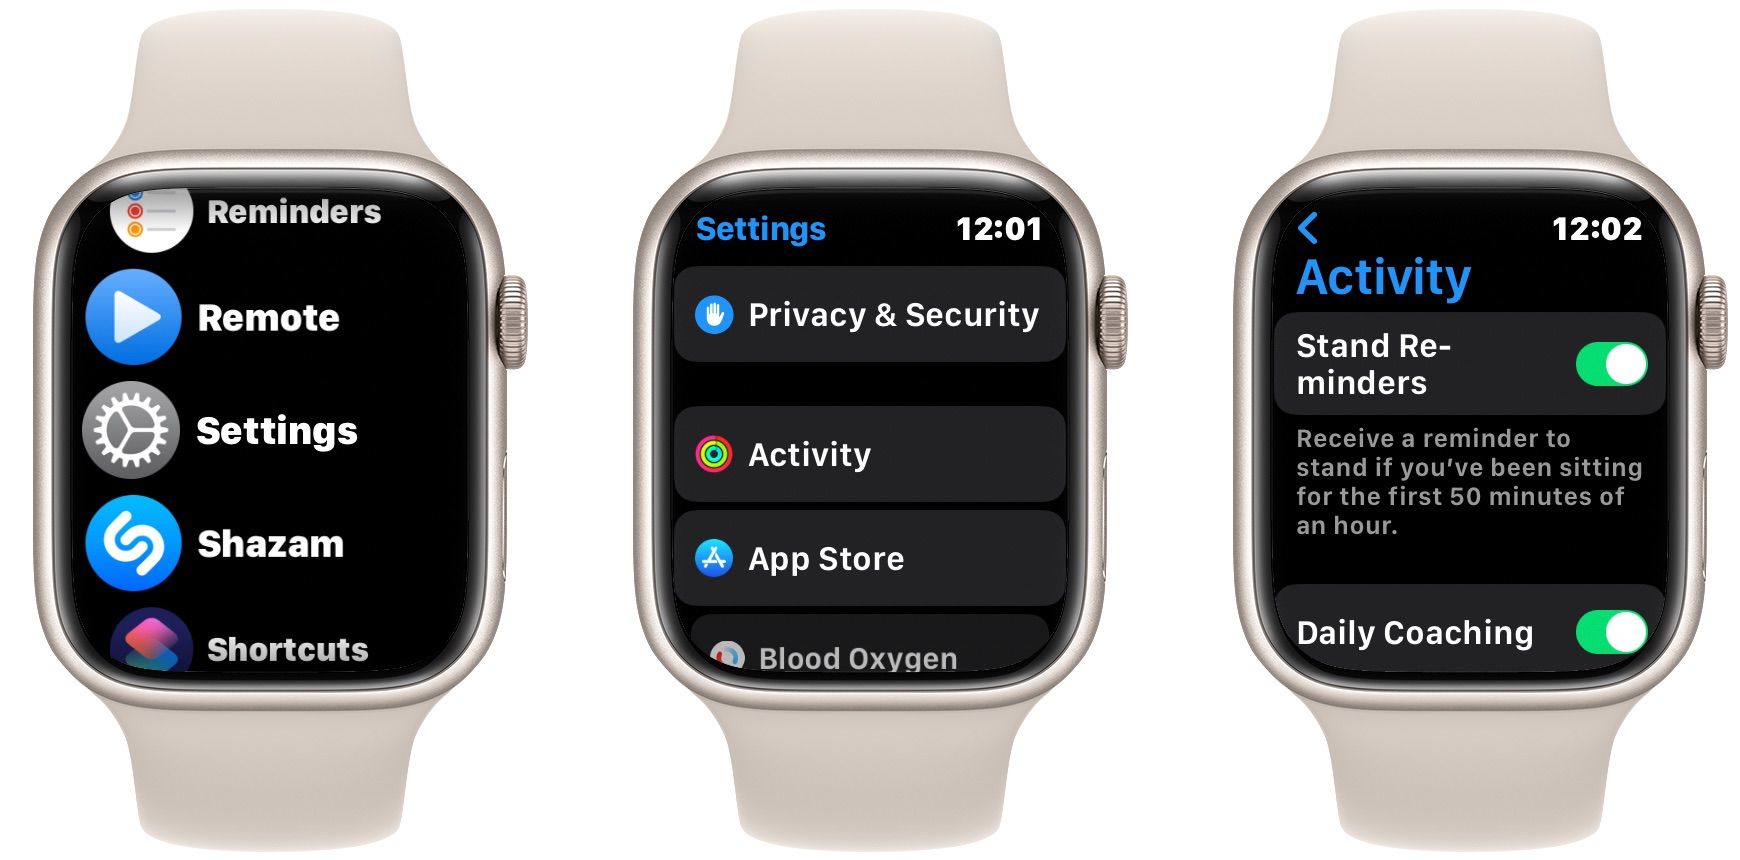 Configurações de atividade do Apple Watch